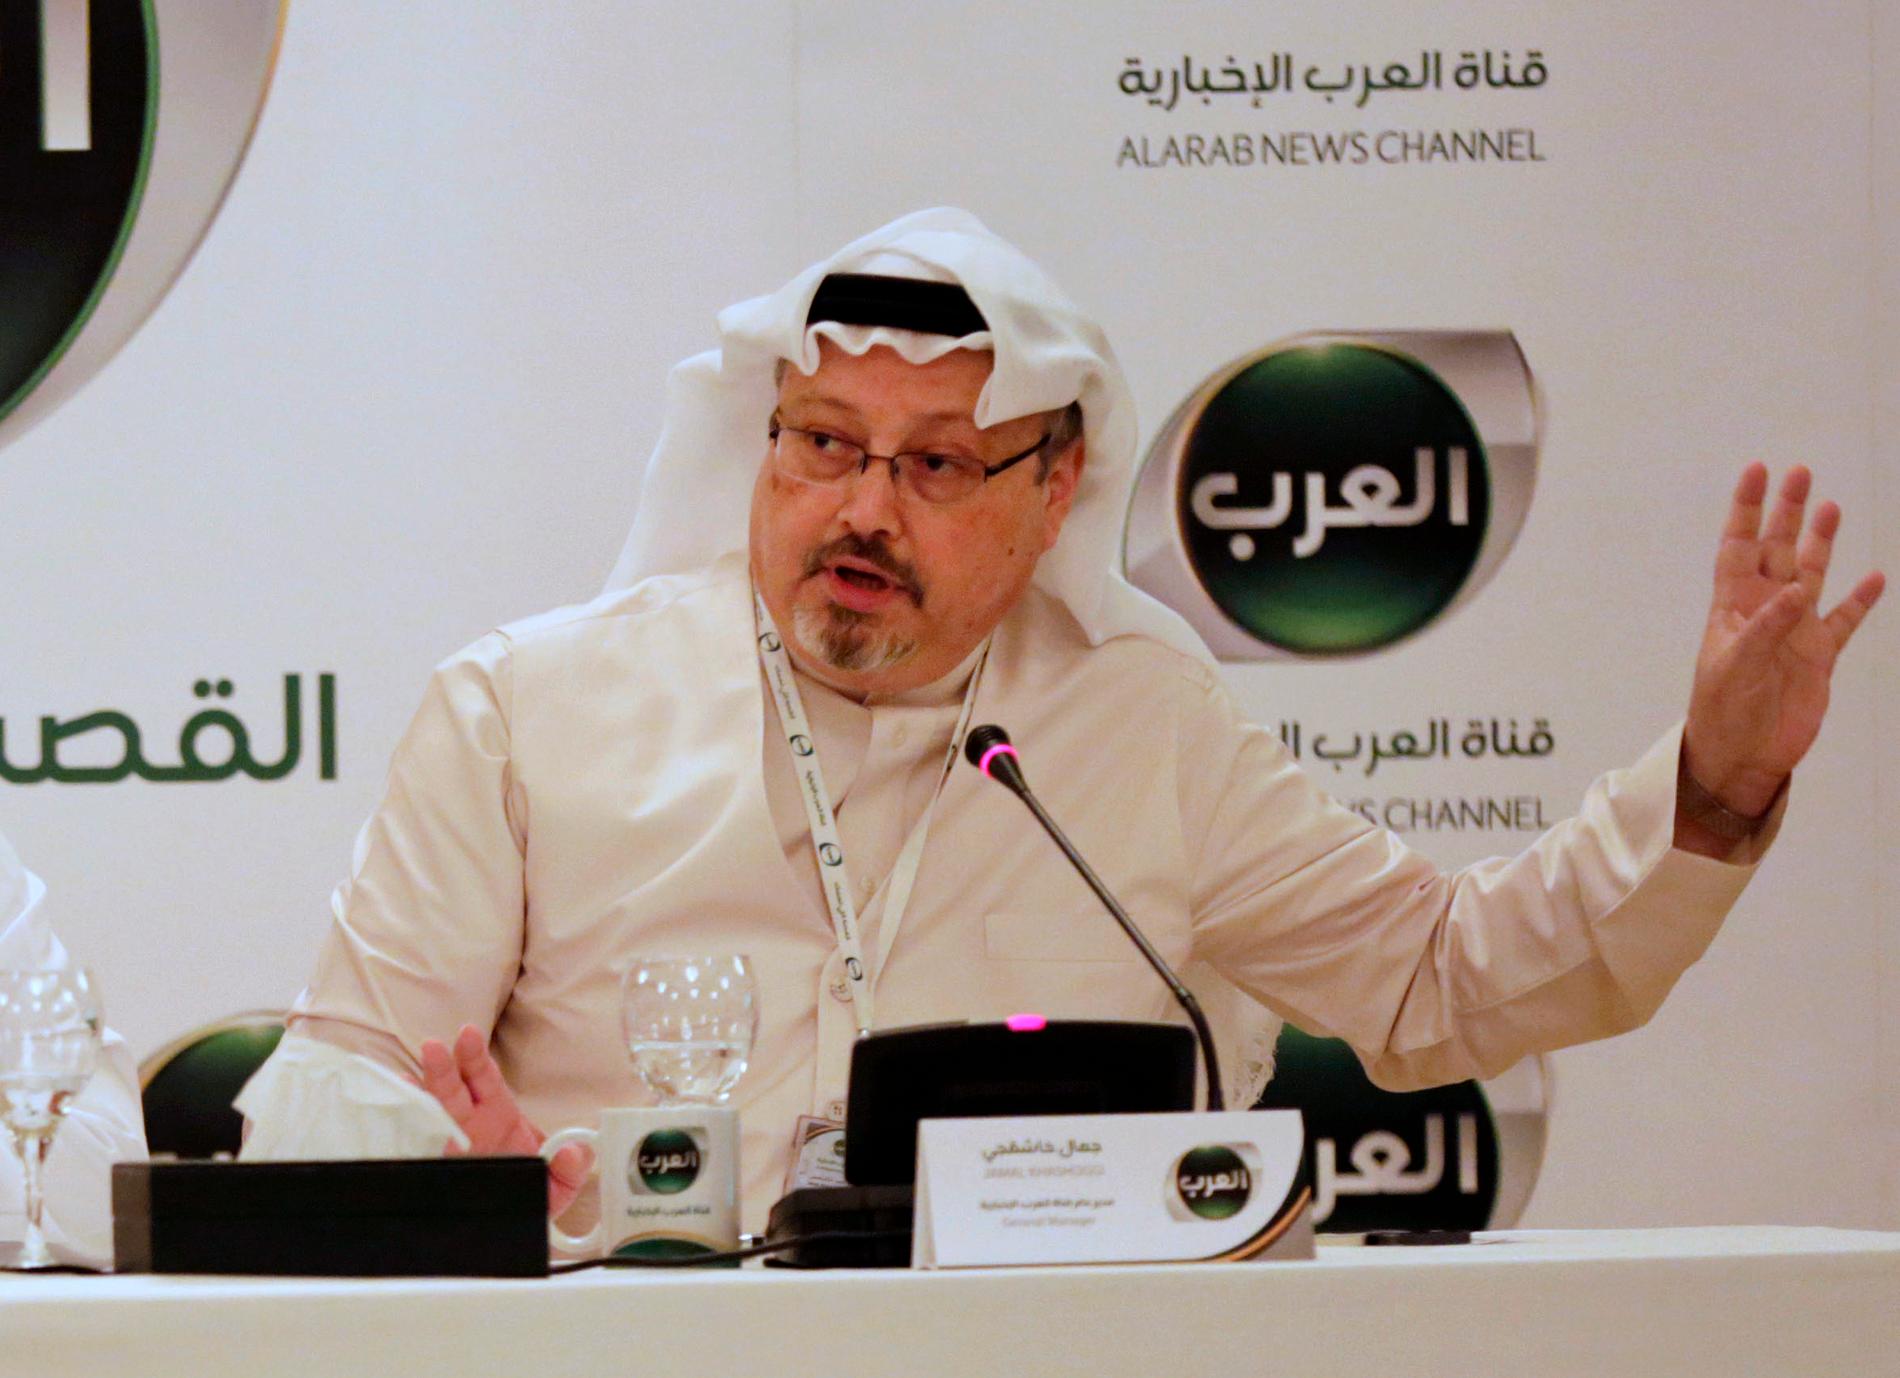 Jamal Khashoggi, under en presskonferens Bahrain i december 2014, då han var vd för en nystartad arabiskspråkig nyhetskanal.